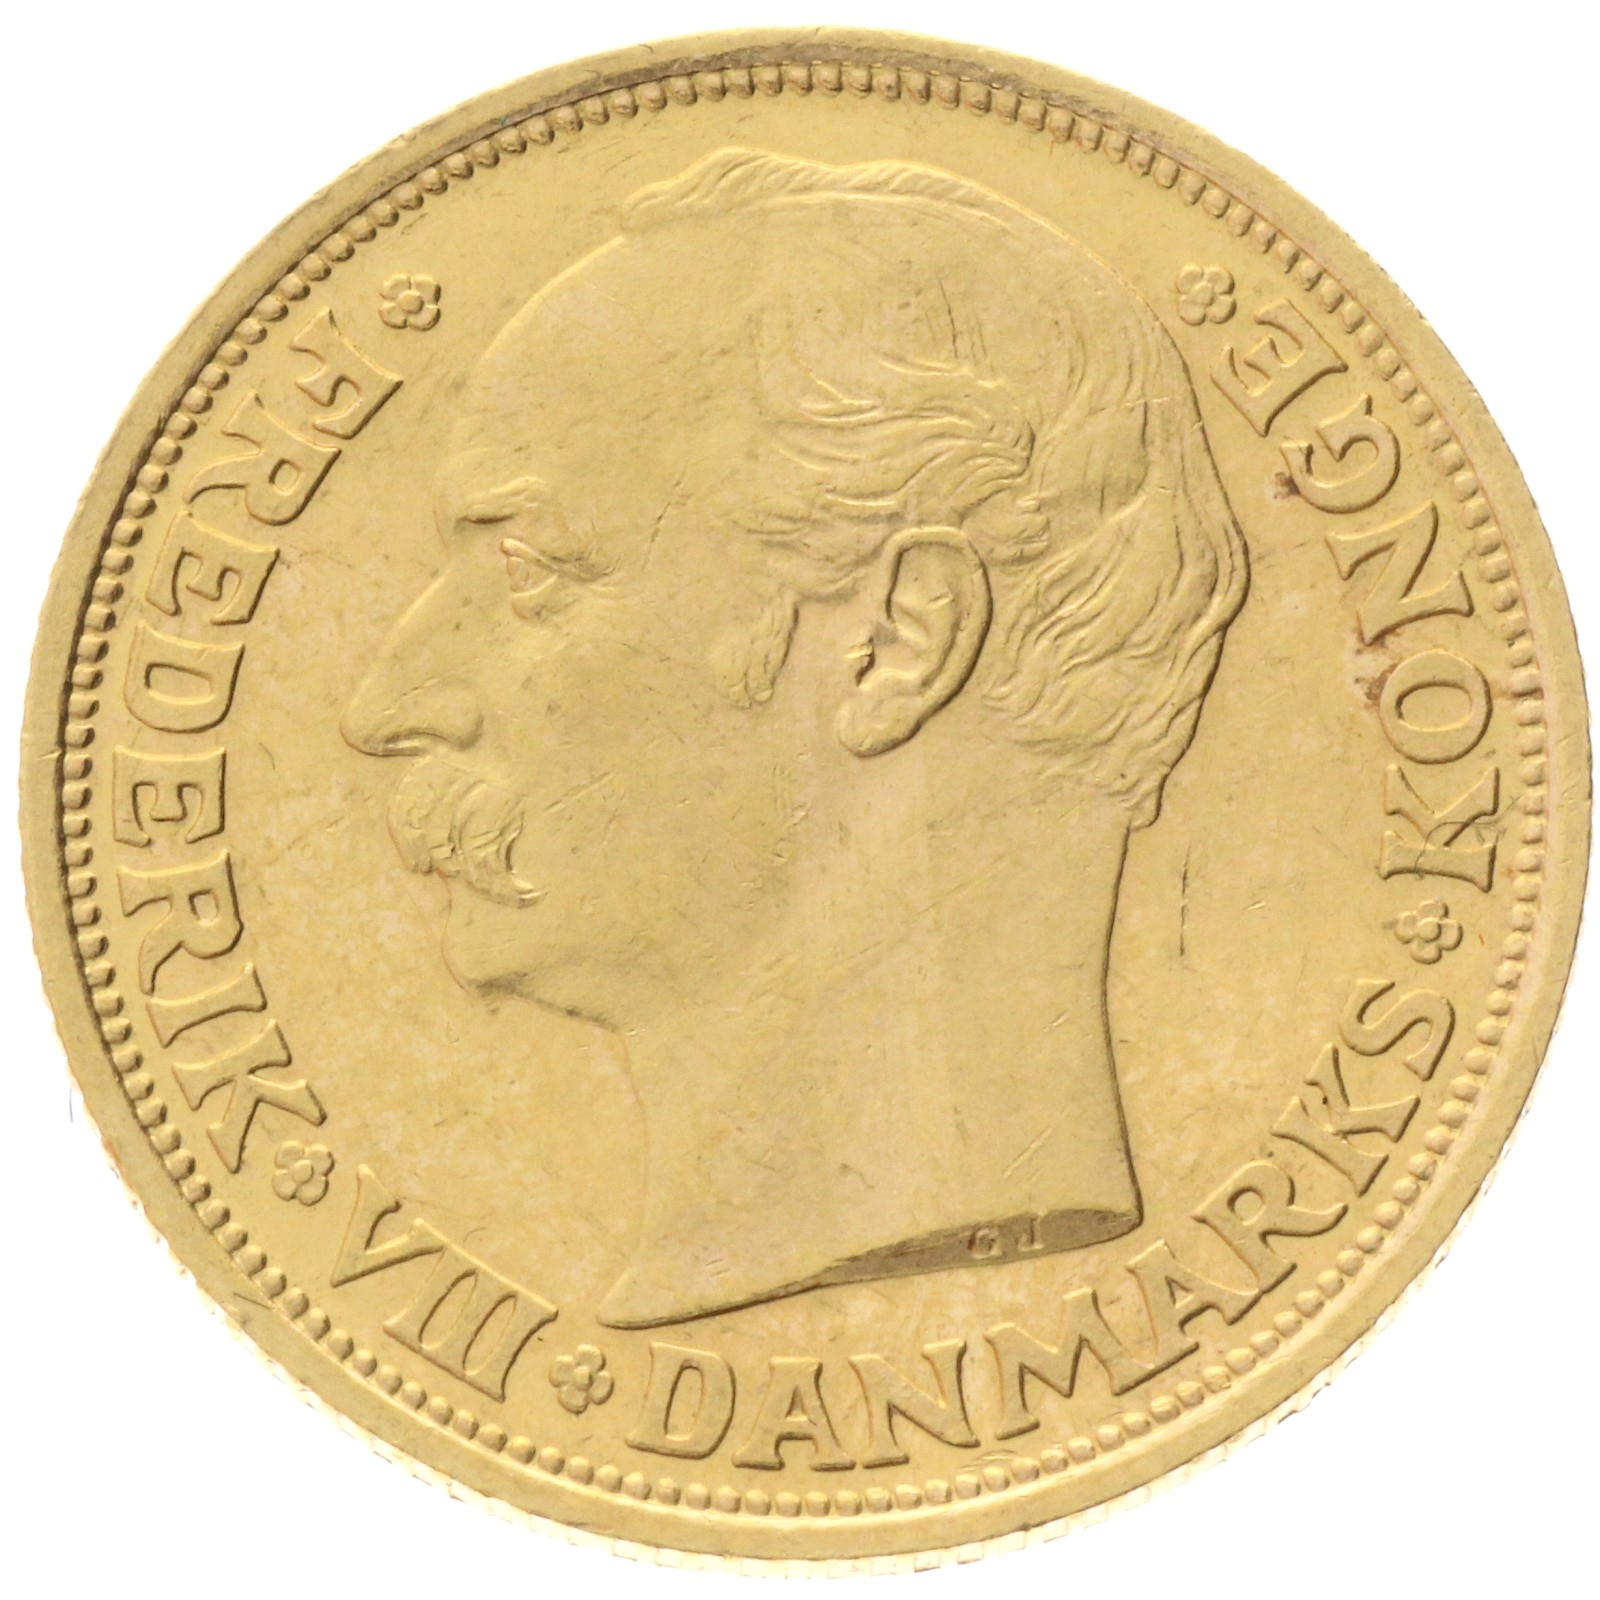 Denmark - 20 kroner - 1912 - Frederik VIII 